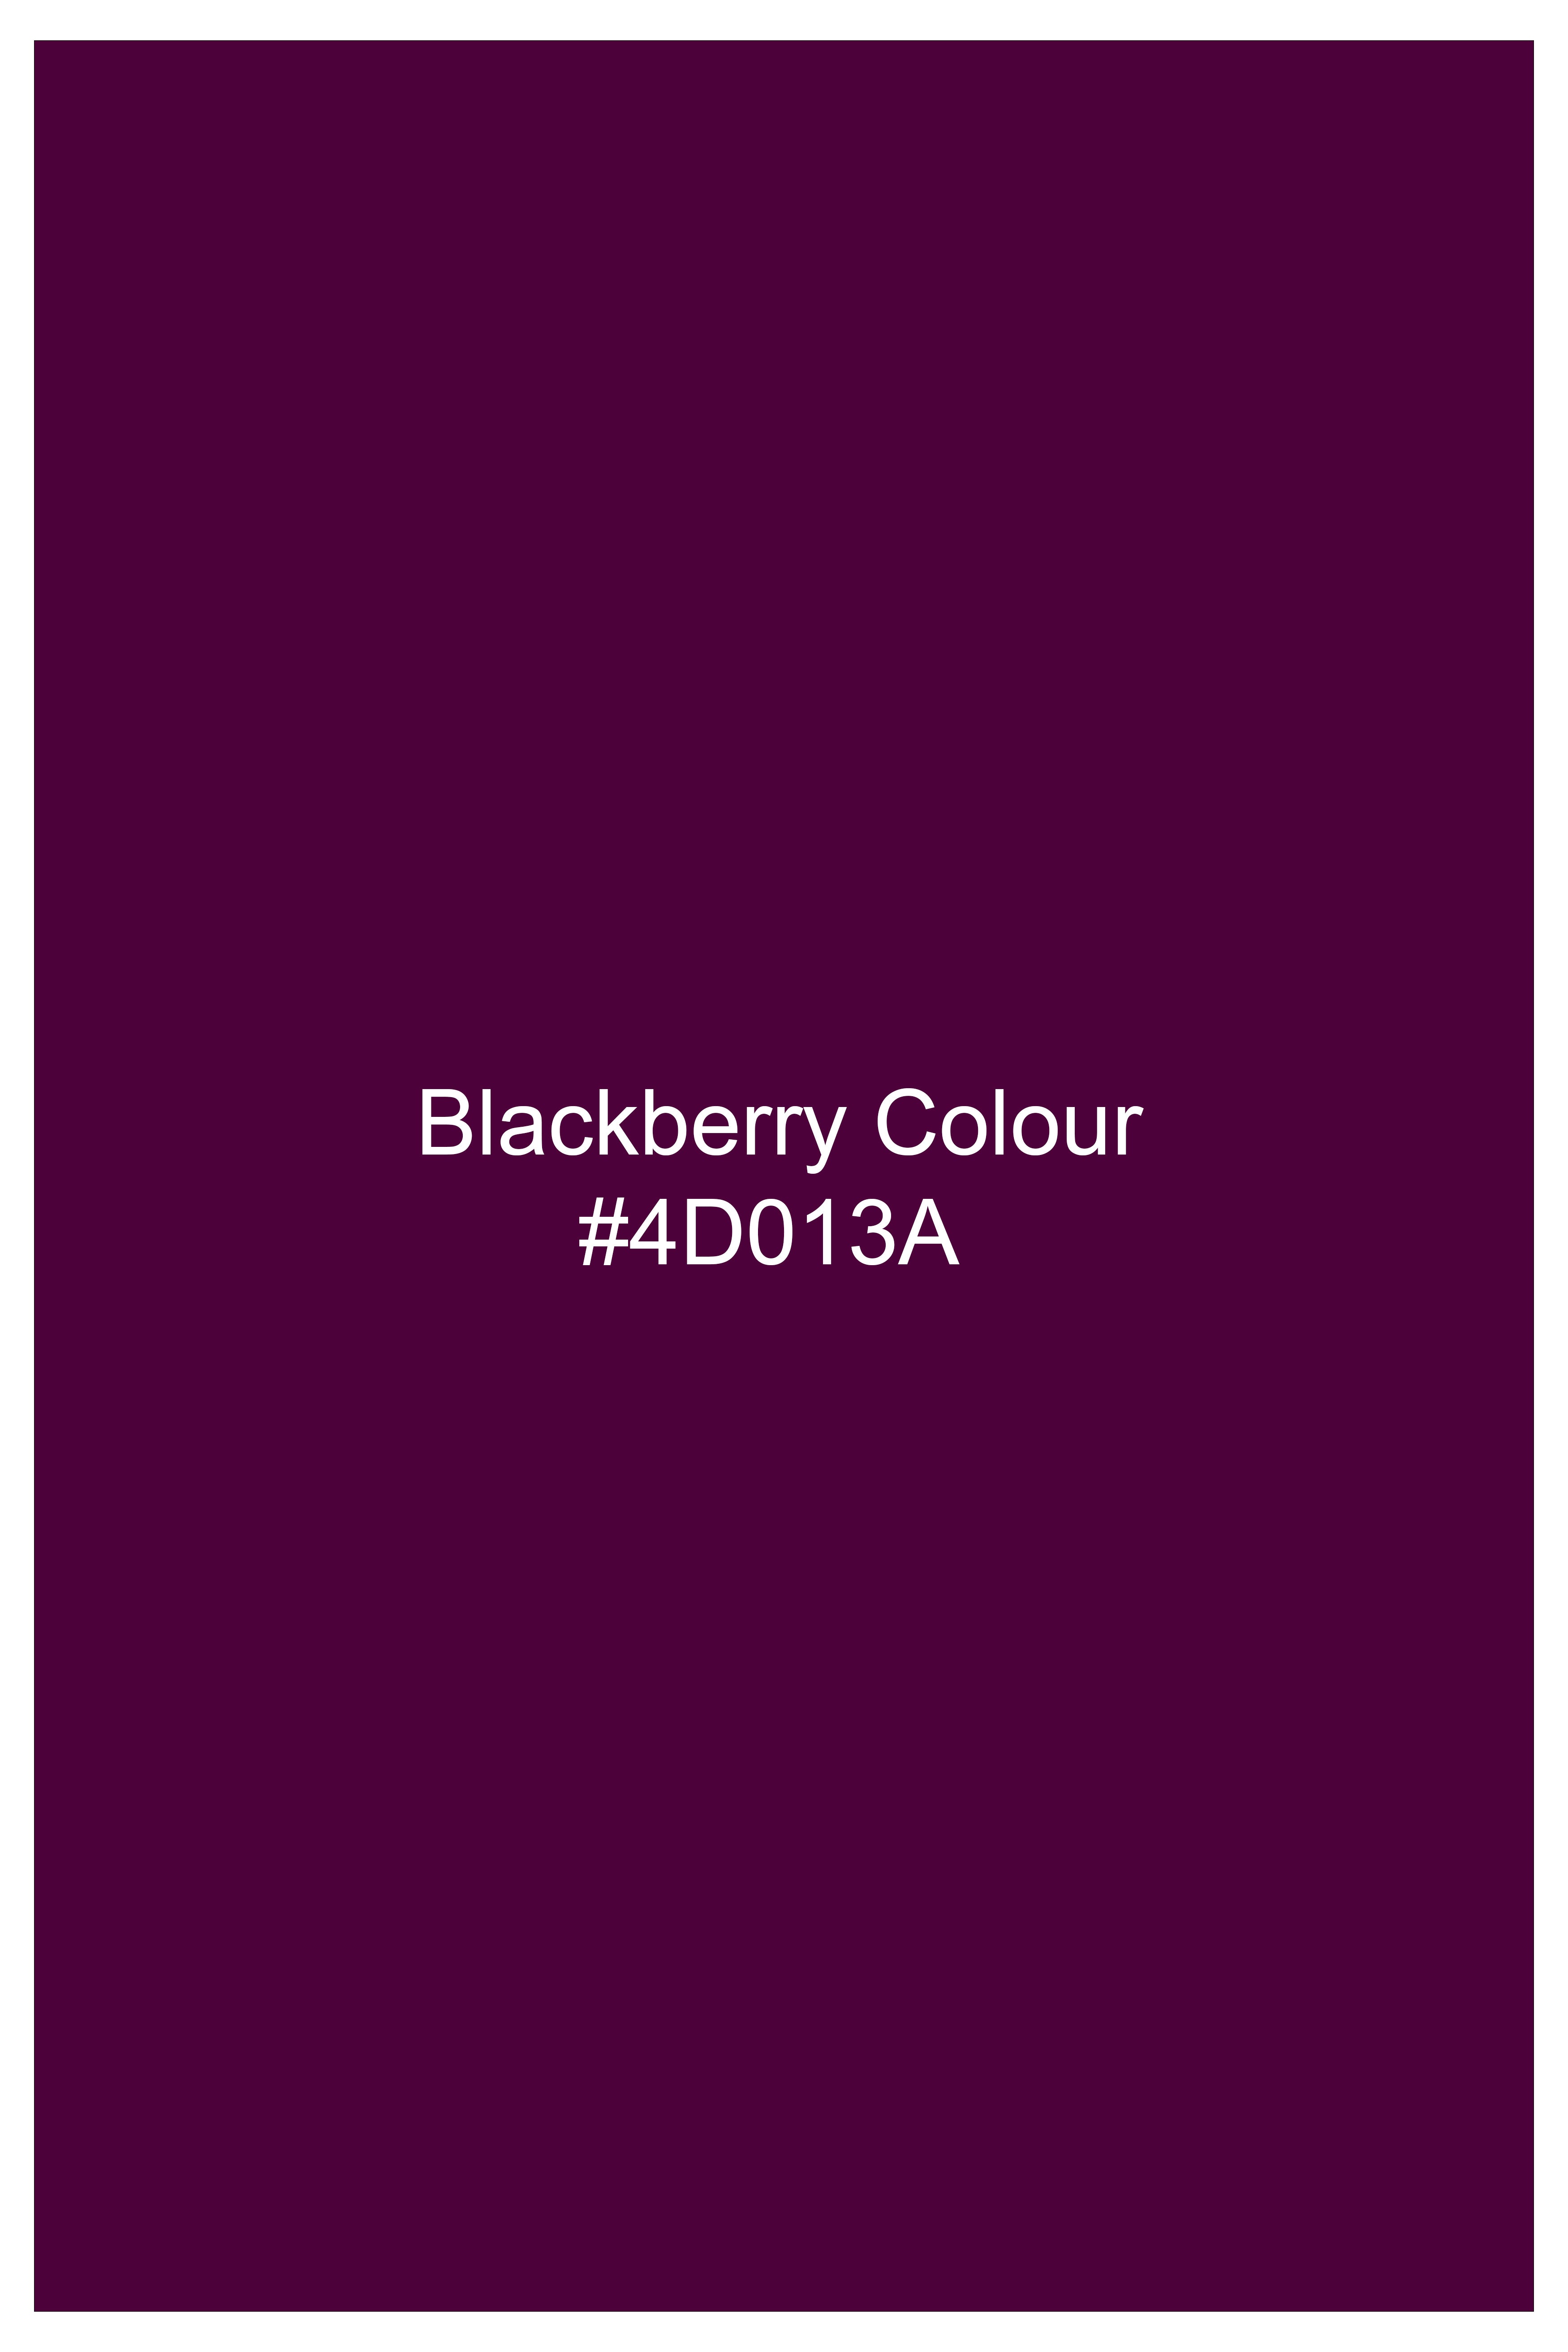 Blackberry Purple Velvet Thread And Sequin Embroidered Nehru Jacket